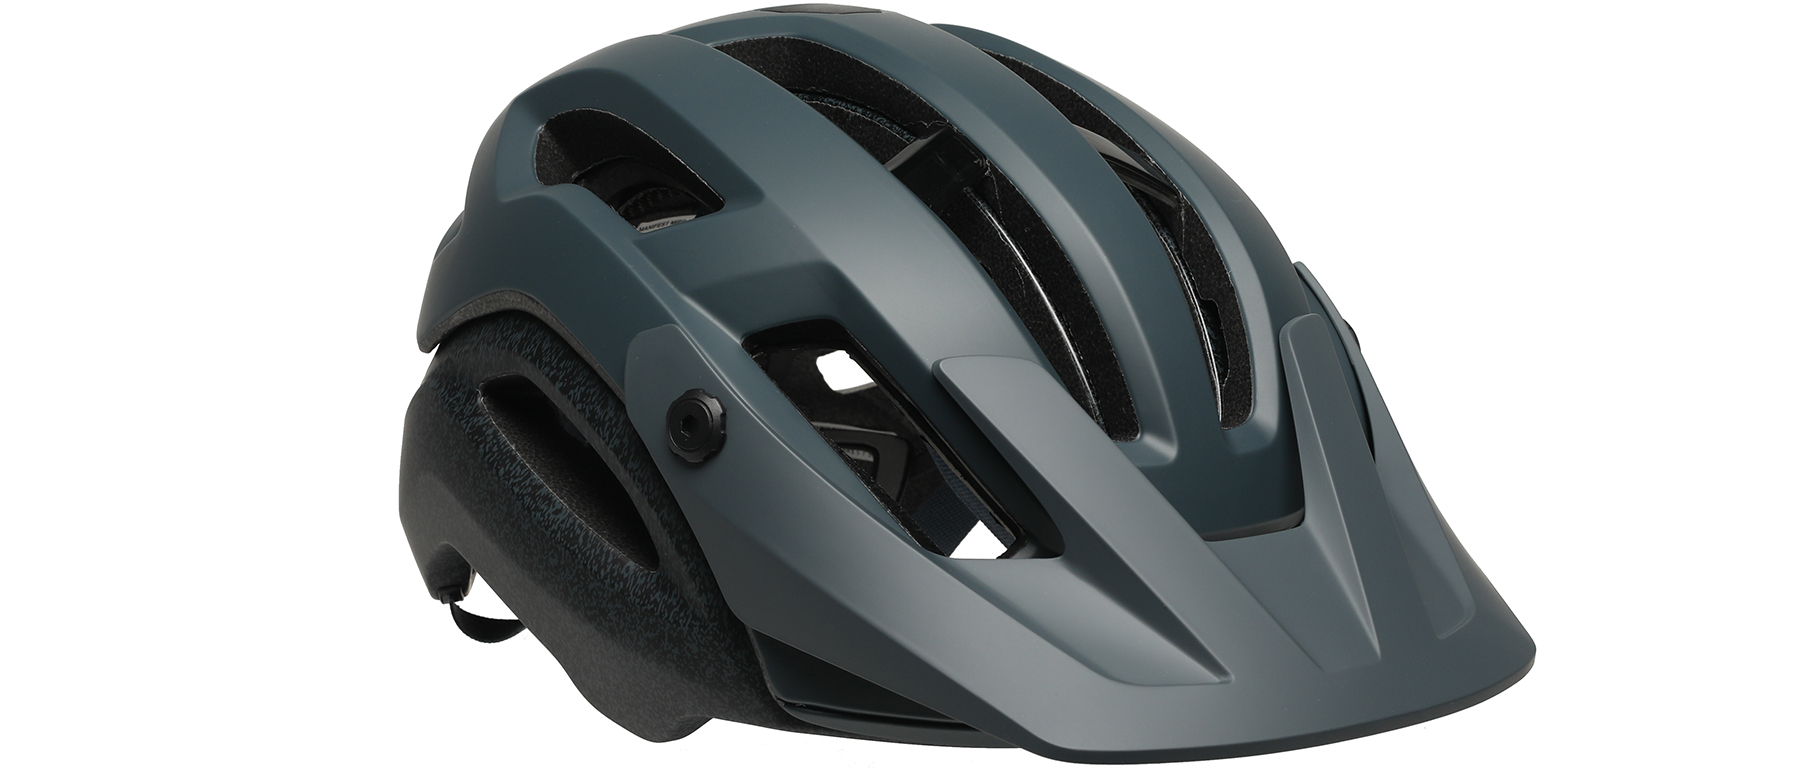 Giro Manifest Spherical Helmet 2021